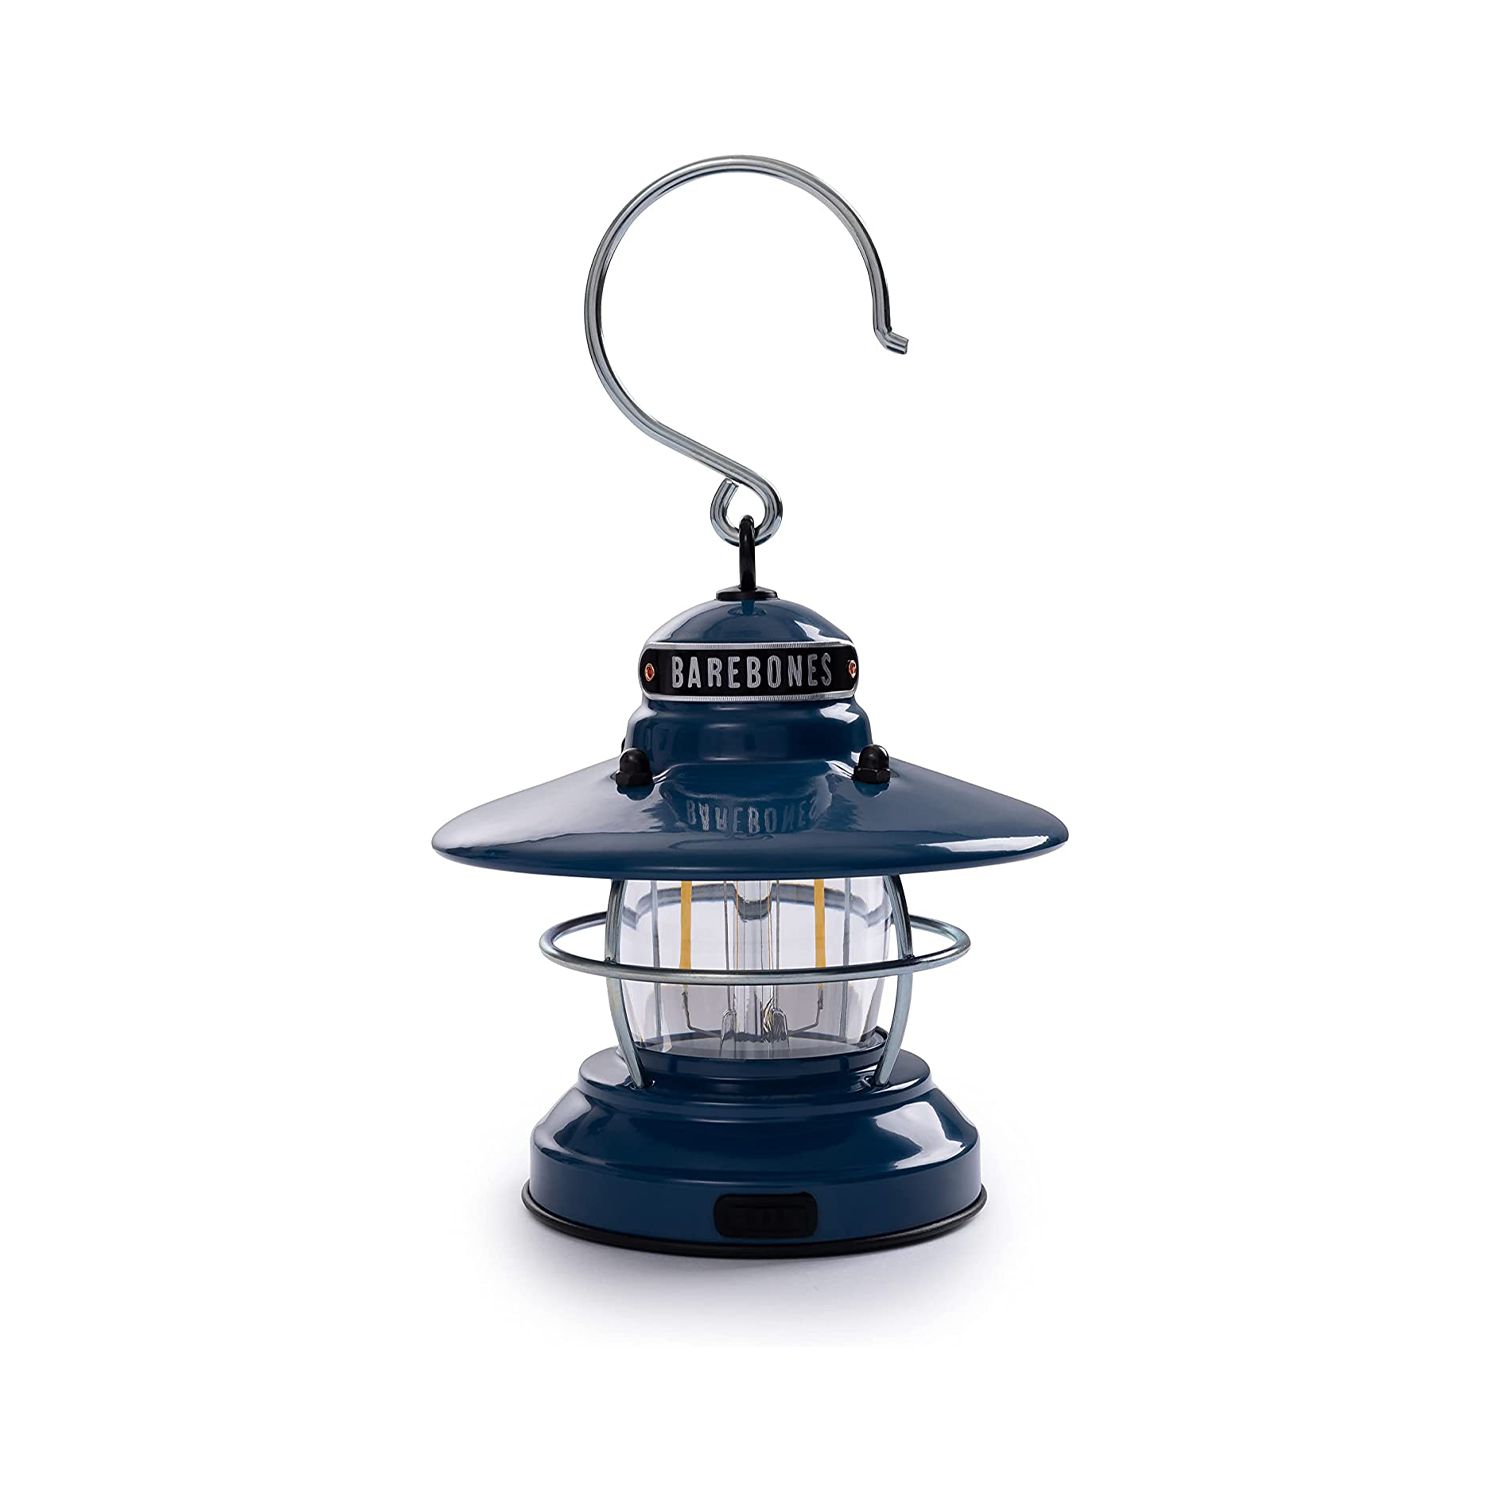 Barebones Edison Mini Lantern - Vintage Adjustable Camping Light